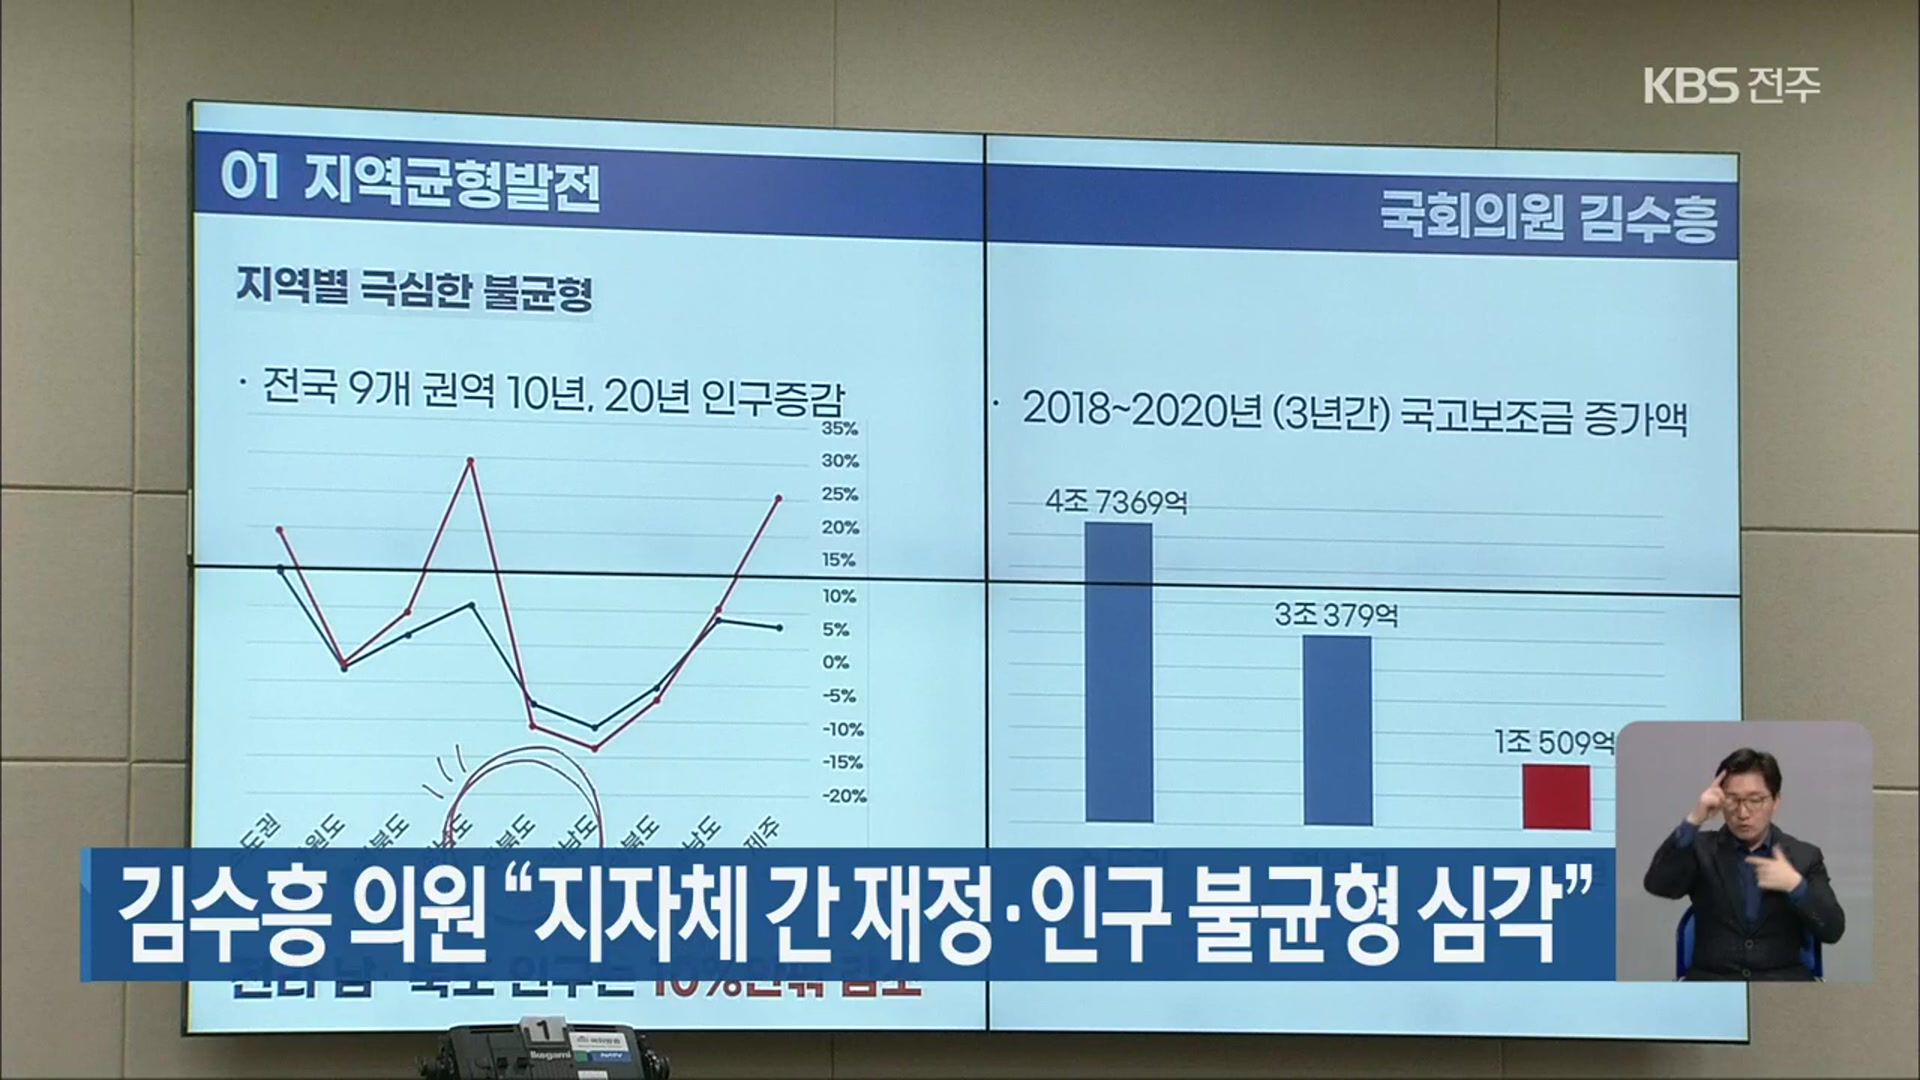 김수흥 의원 “지자체 간 재정·인구 불균형 심각”